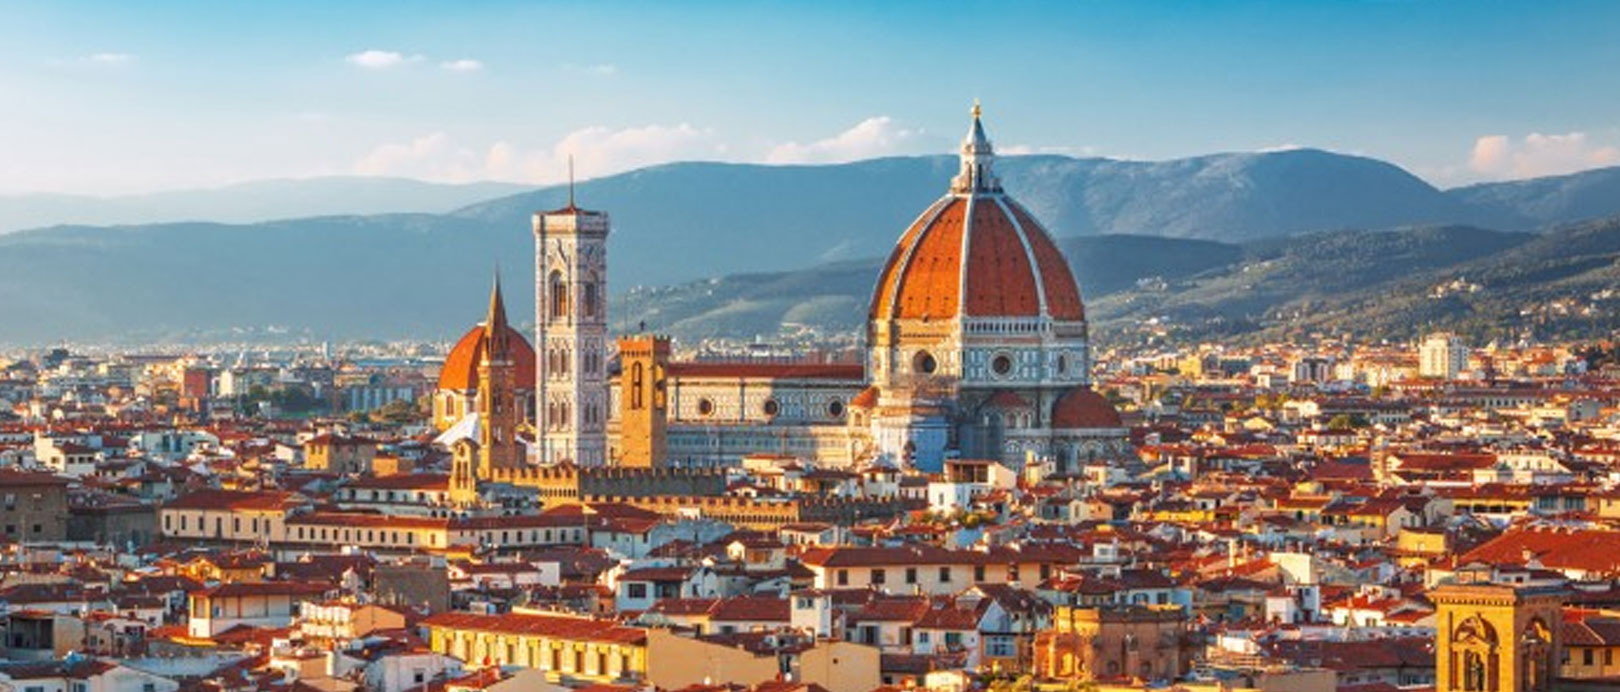 Florencia o Nápoles: cómo nominar entre los dos